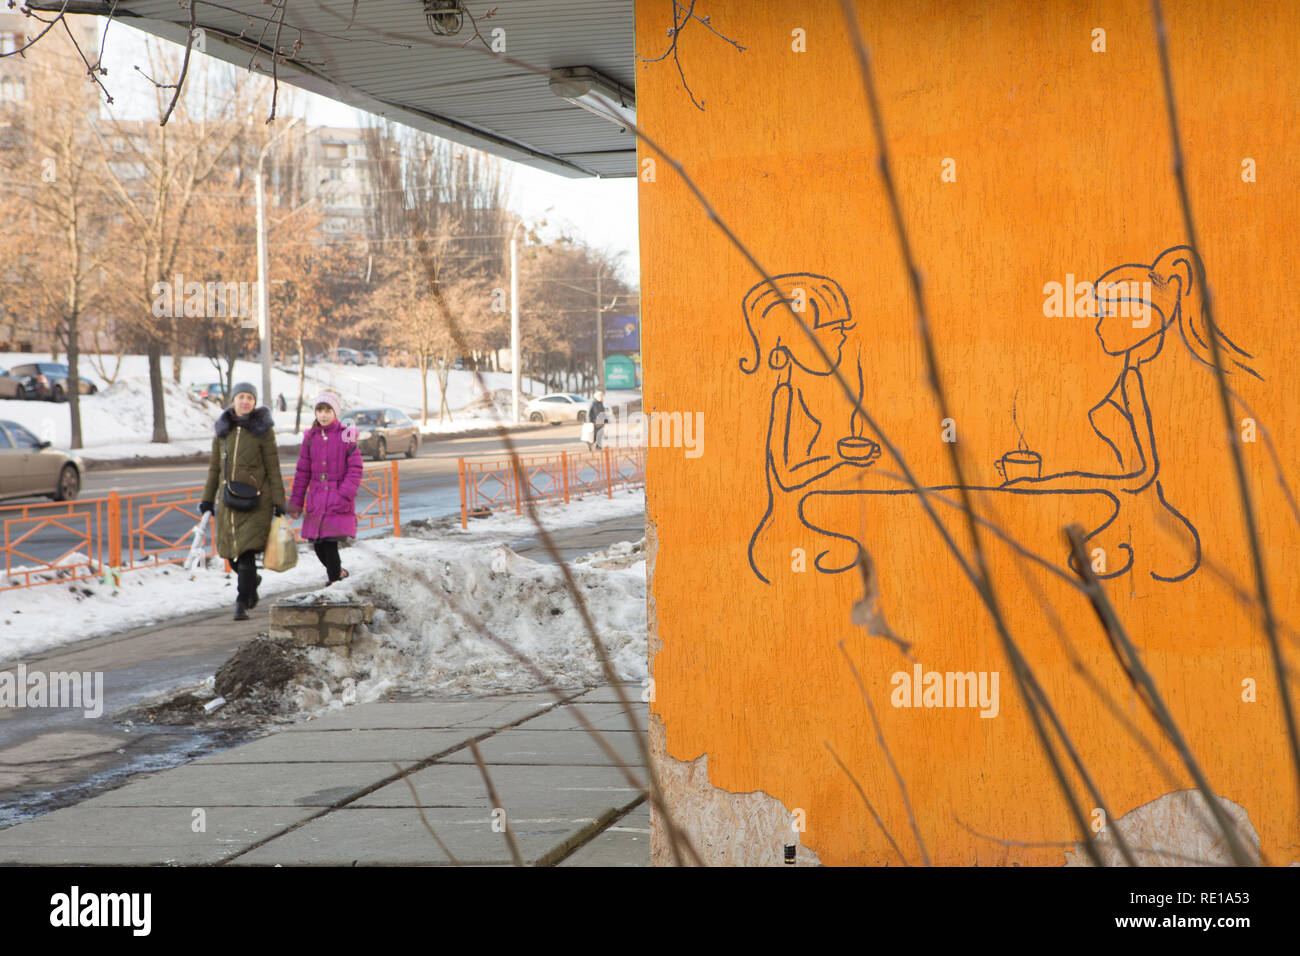 2 damas a pie de calle de Kiev un día de invierno, pasando por la pequeña tienda con elegante dibujo a mano graffiti de 2 damas bebiendo té caliente en una pared de la tienda amarilla Foto de stock